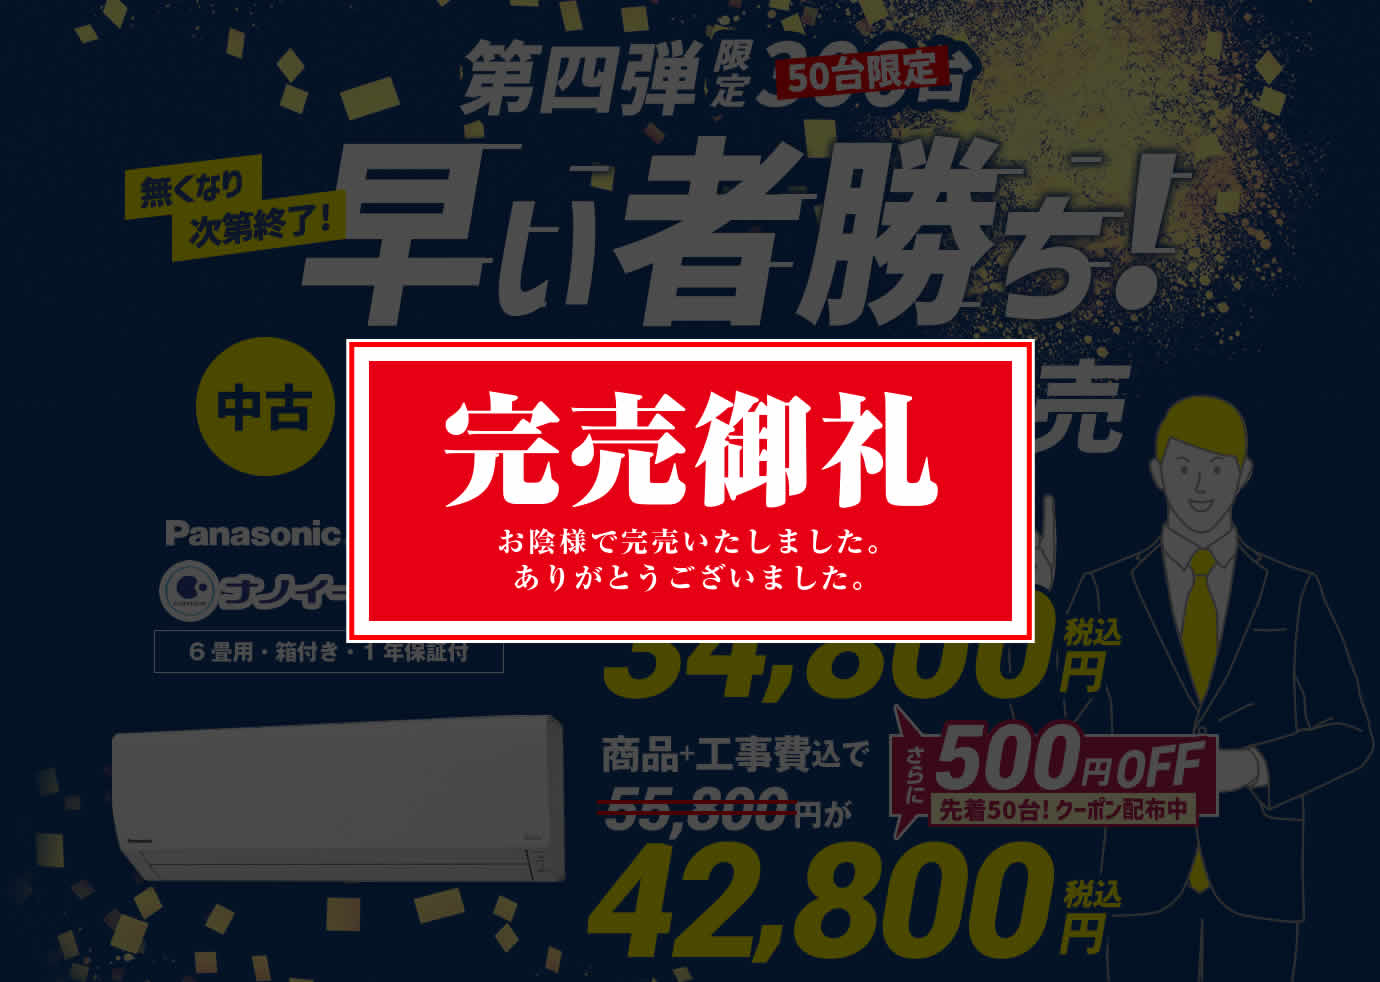 パナソニック「エオリア」東京2020特別エアコン中古激安販売